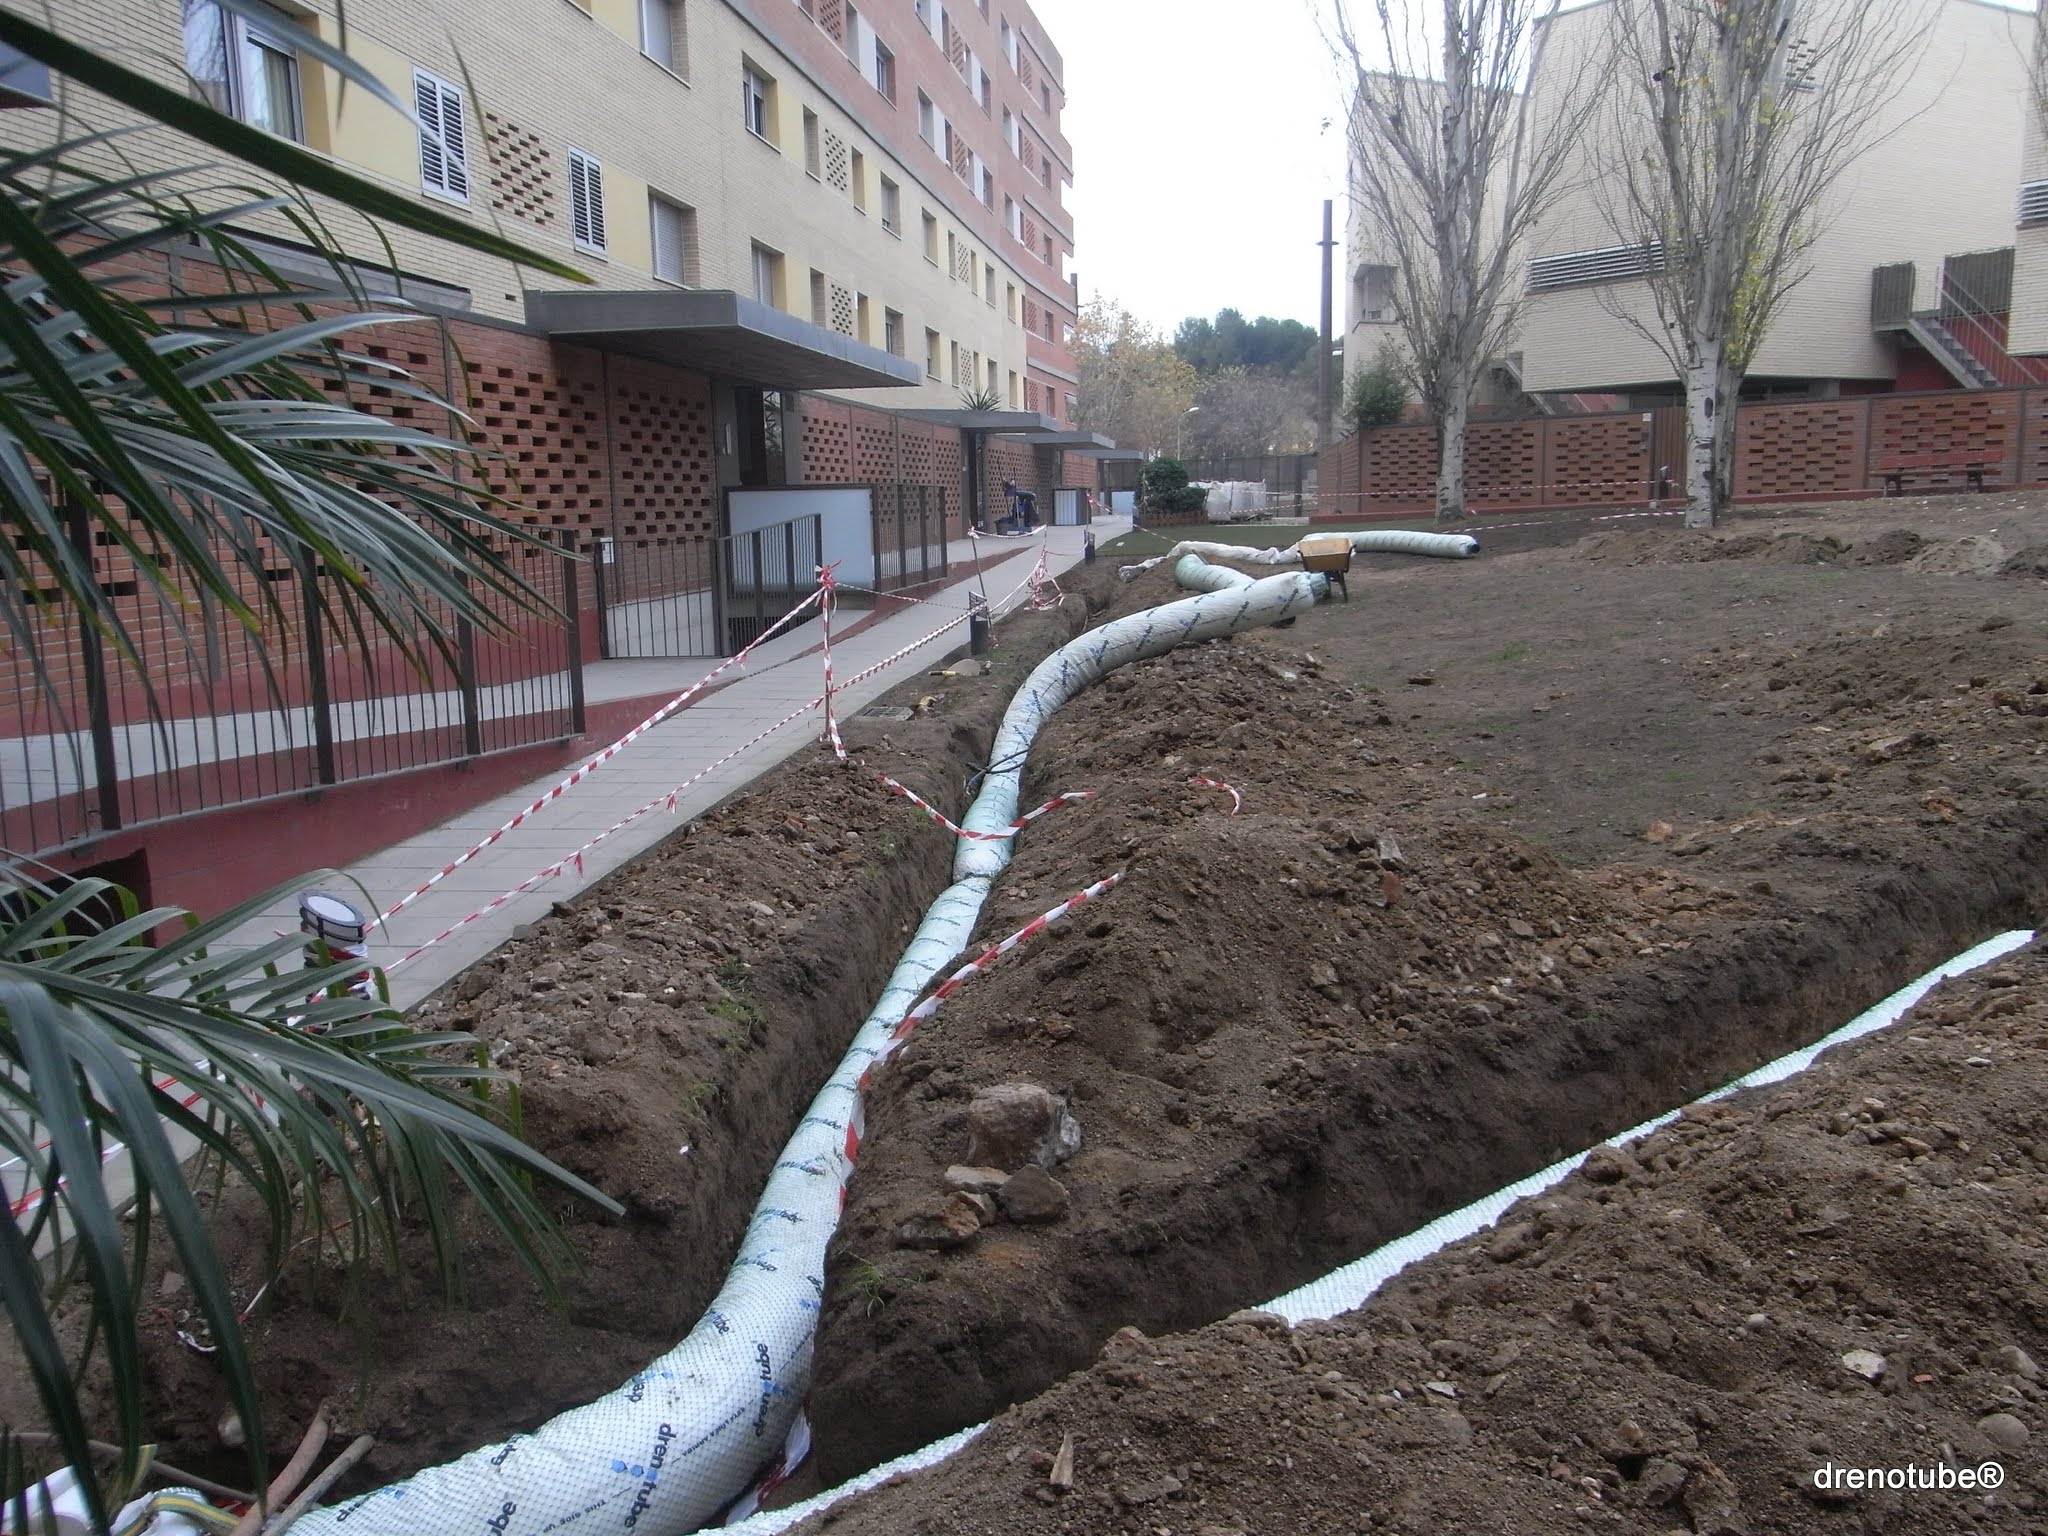 Système de drainage drenotube® dans un jardin – Barcelone